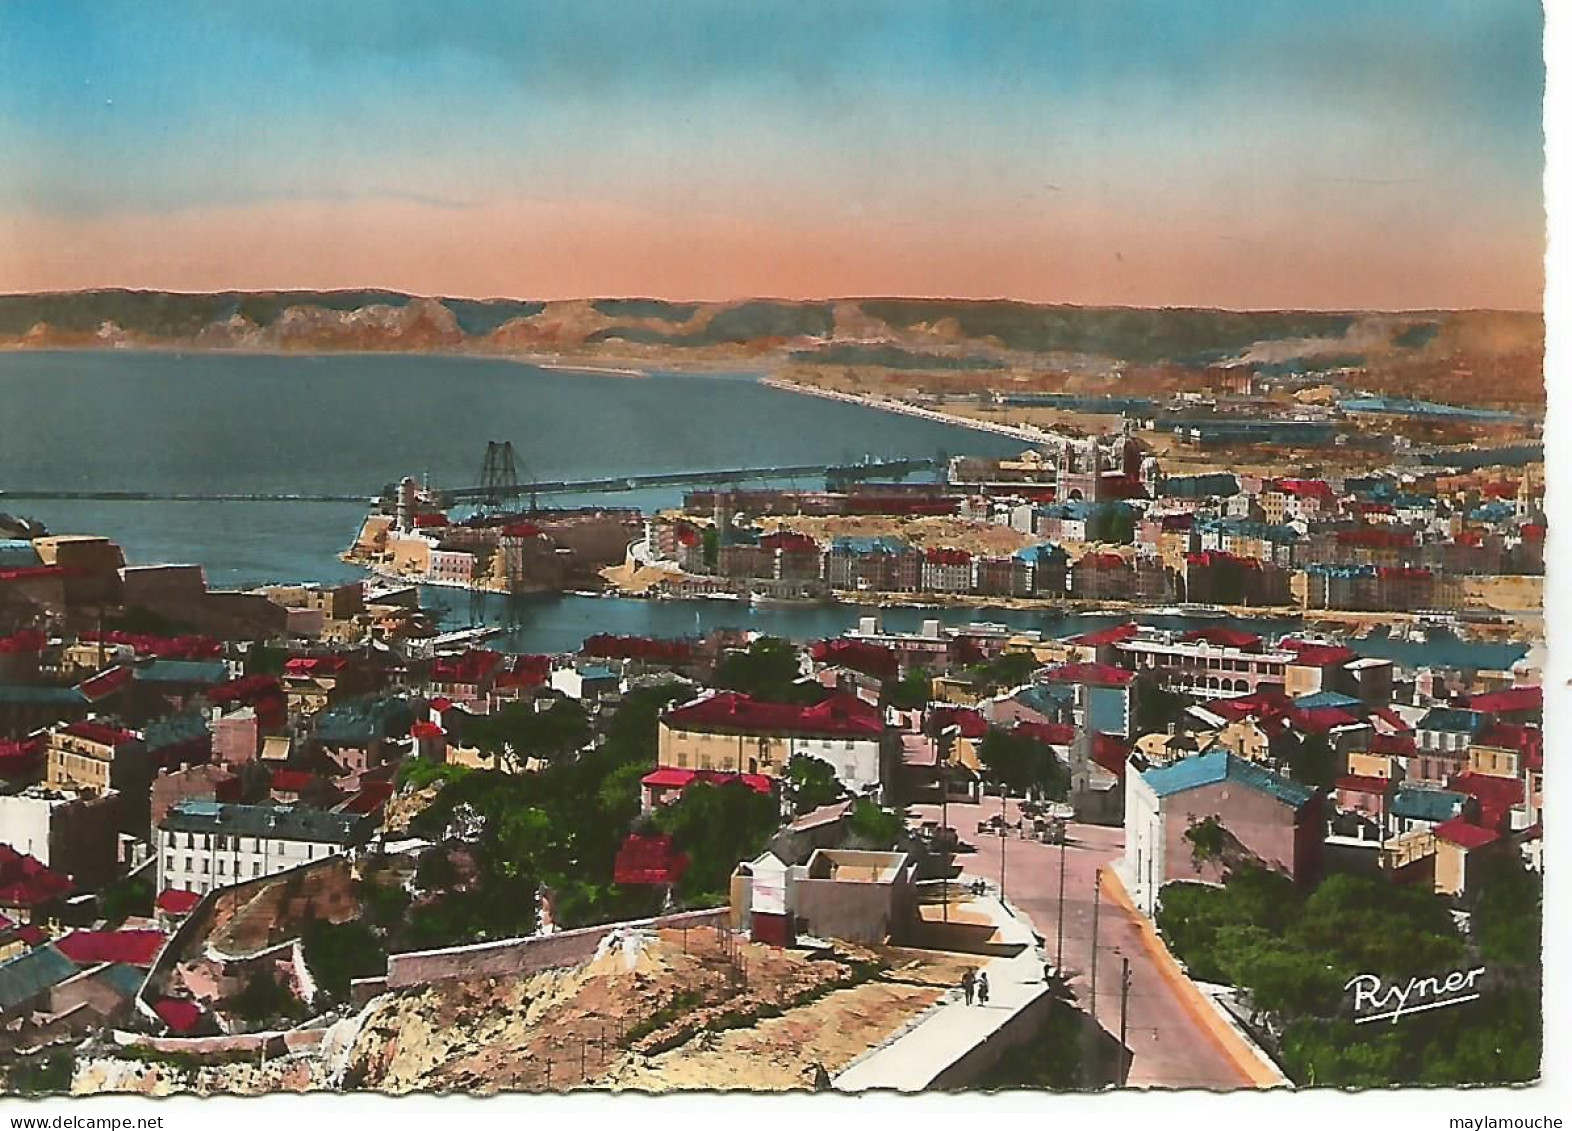 Marseille (lg - Oude Haven (Vieux Port), Saint Victor, De Panier